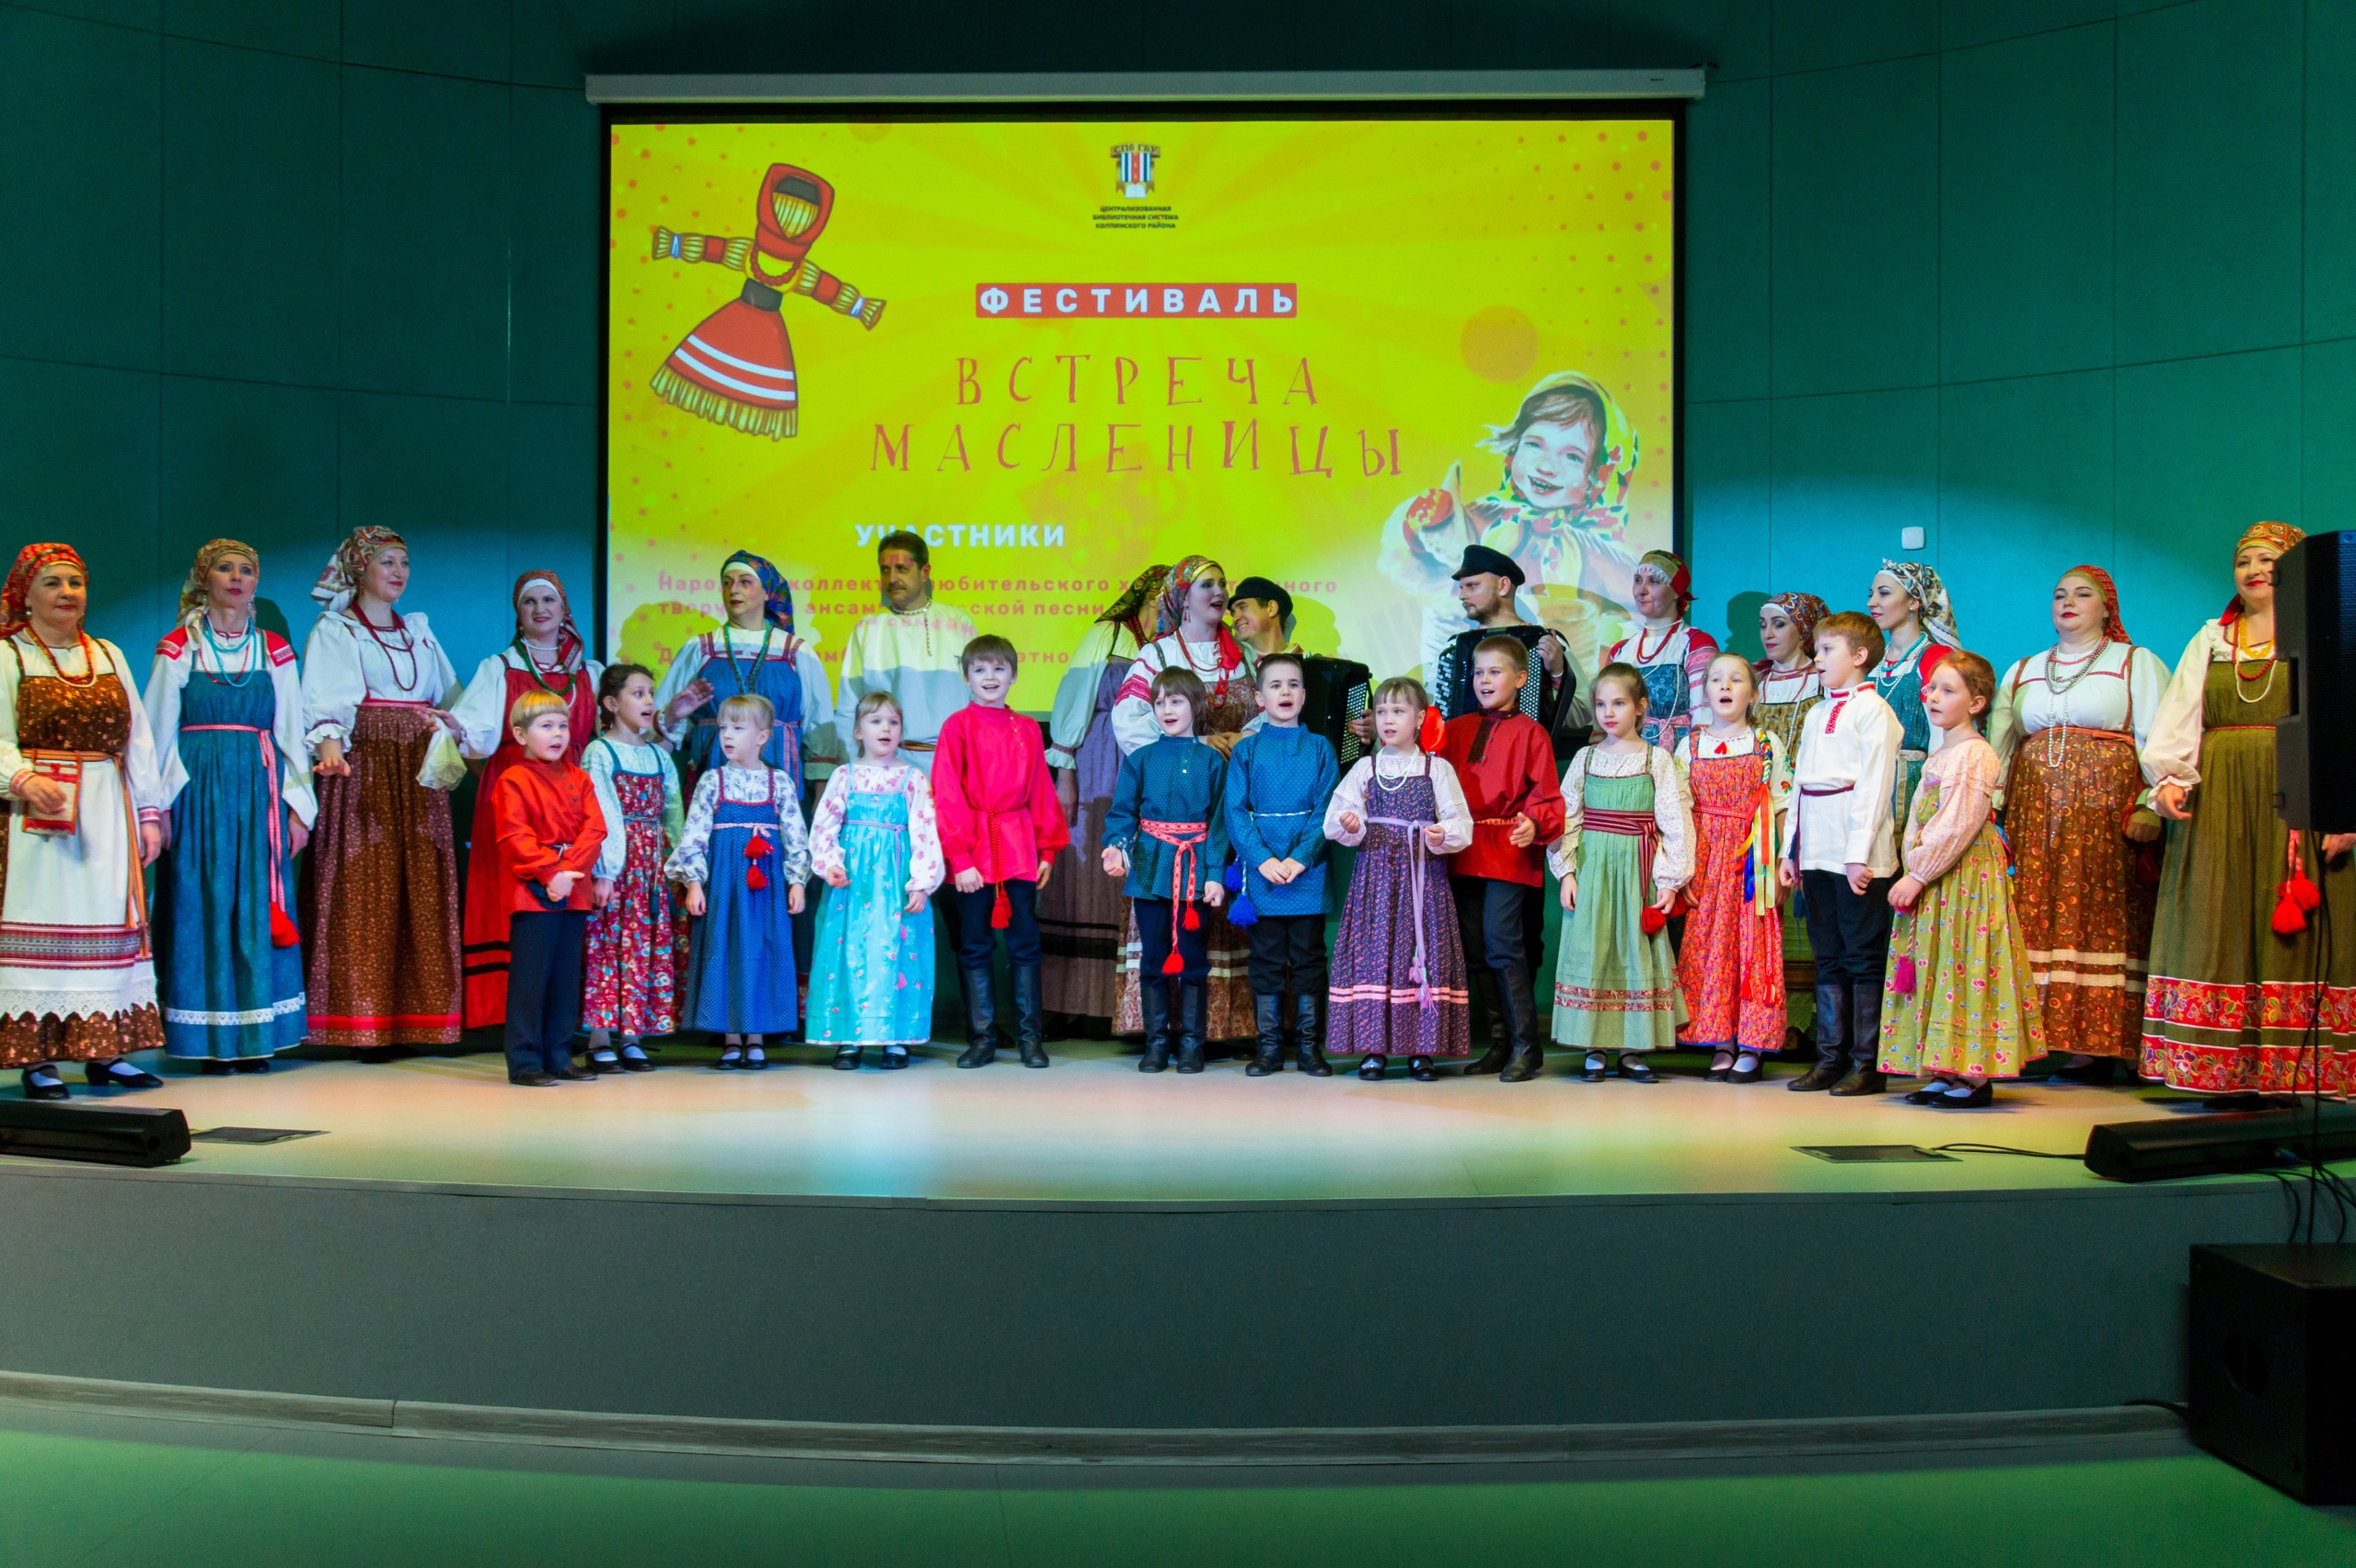 20 февраля в мультимедийном зале Детской районной библиотеки (г. Колпино, ул. Веры Слуцкой, д. 50) прошёл фестиваль "Встреча Масленицы".